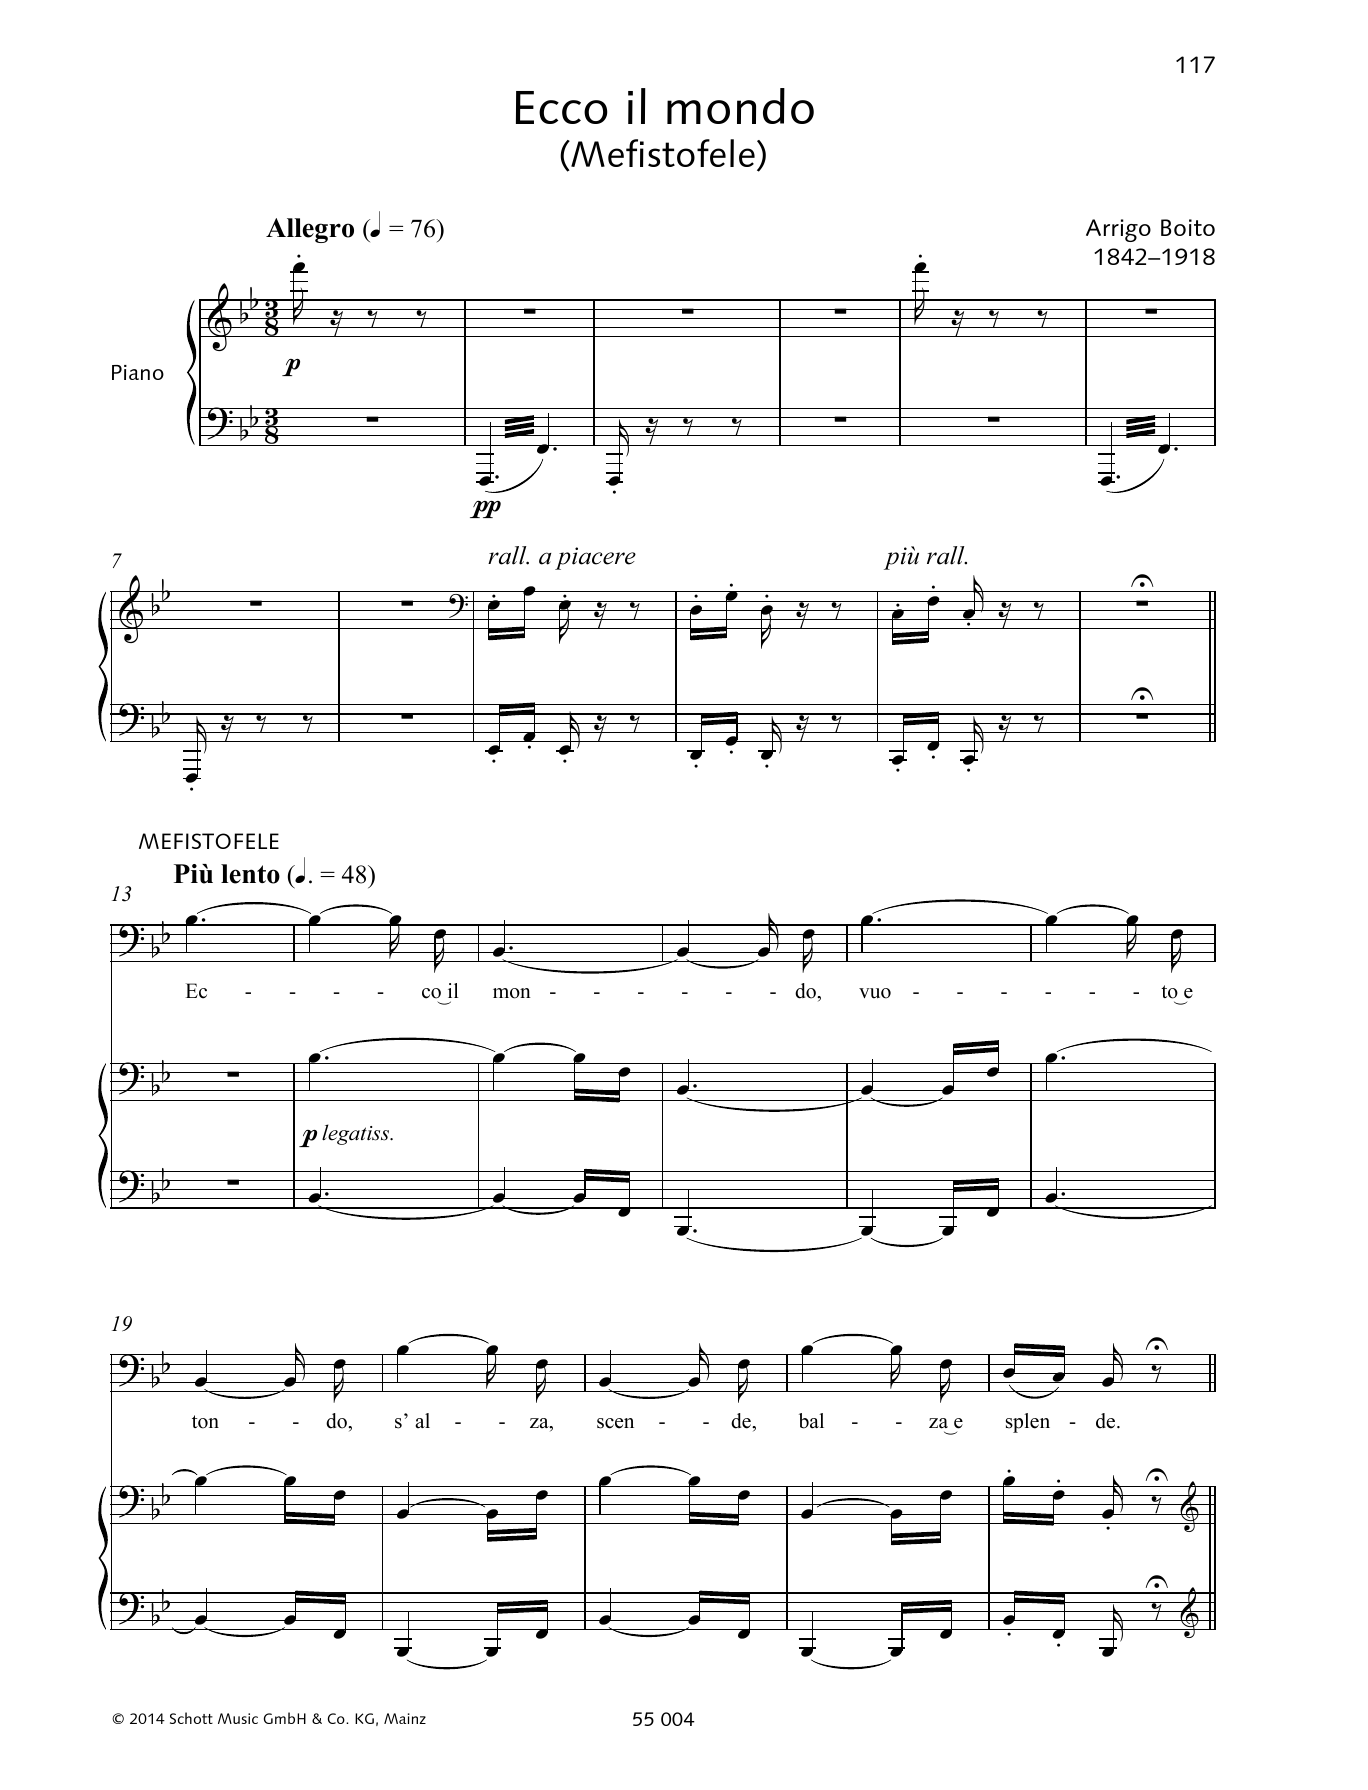 Download Arrigo Boito Ecco il mondo Sheet Music and learn how to play Piano & Vocal PDF digital score in minutes